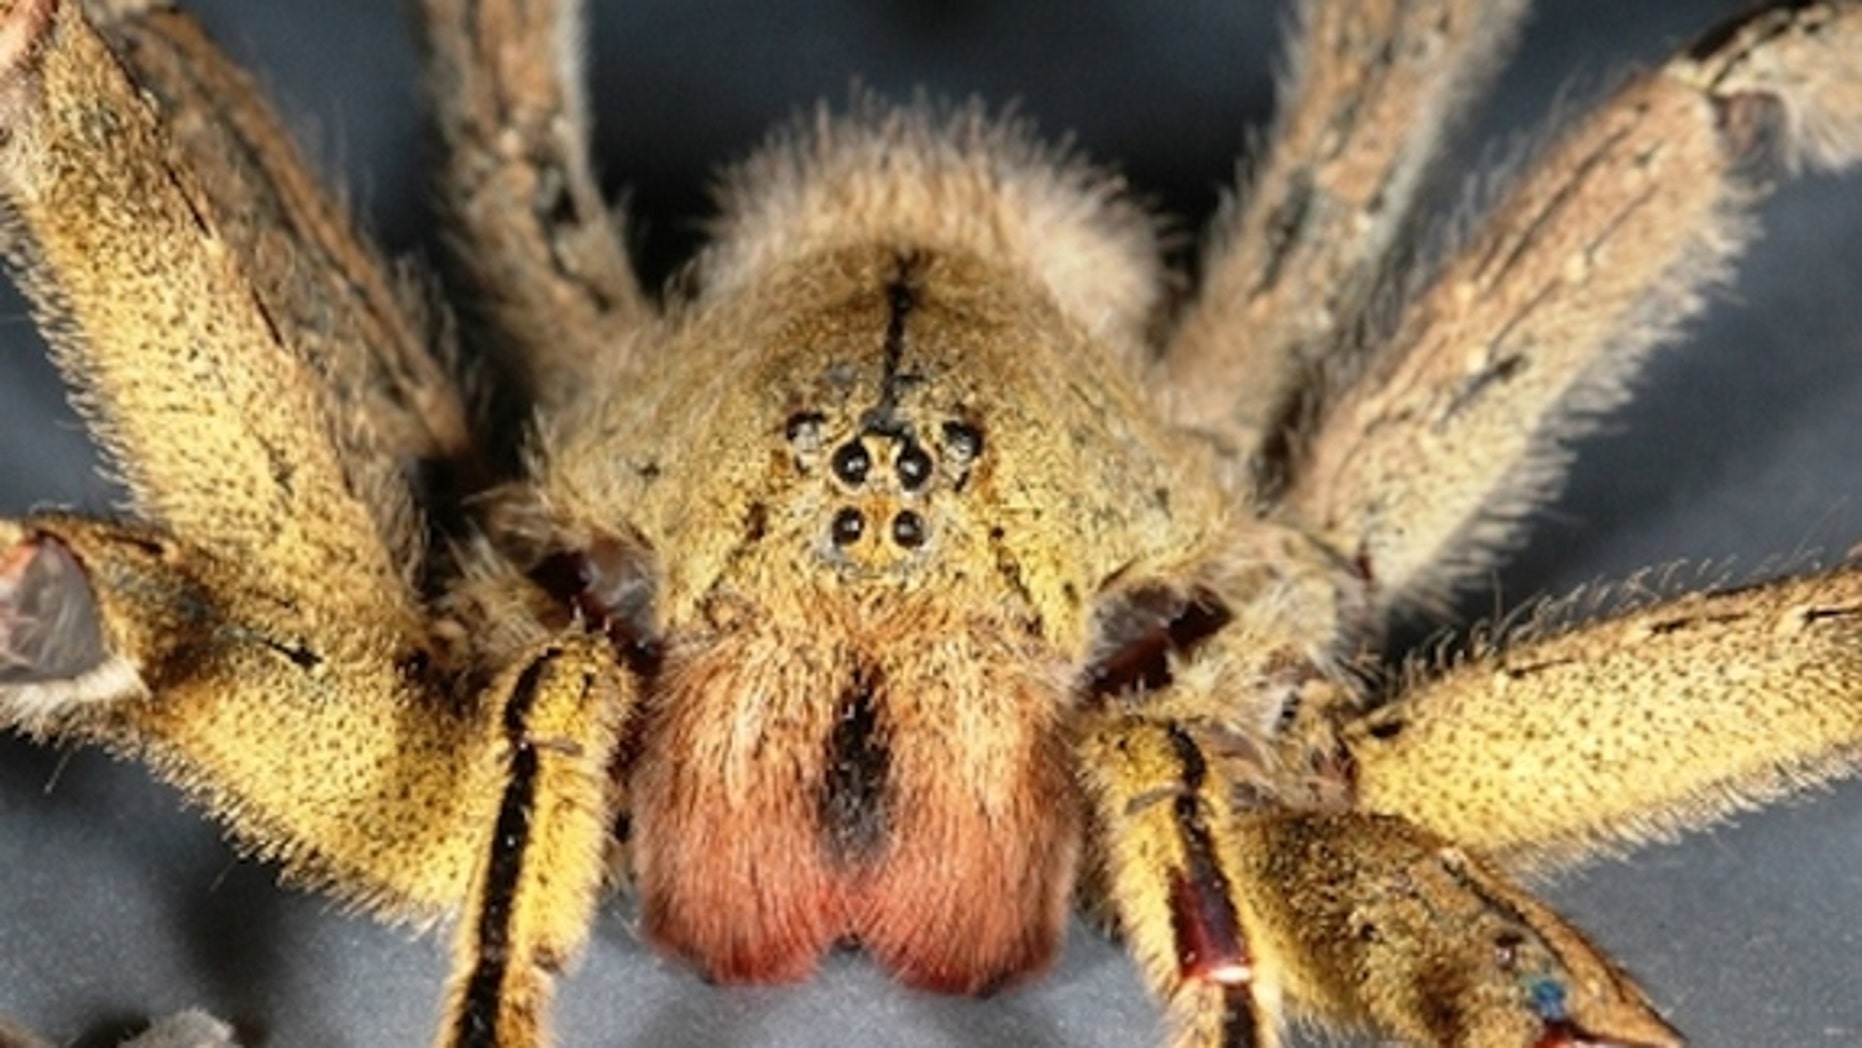 brazilian wandering spider species